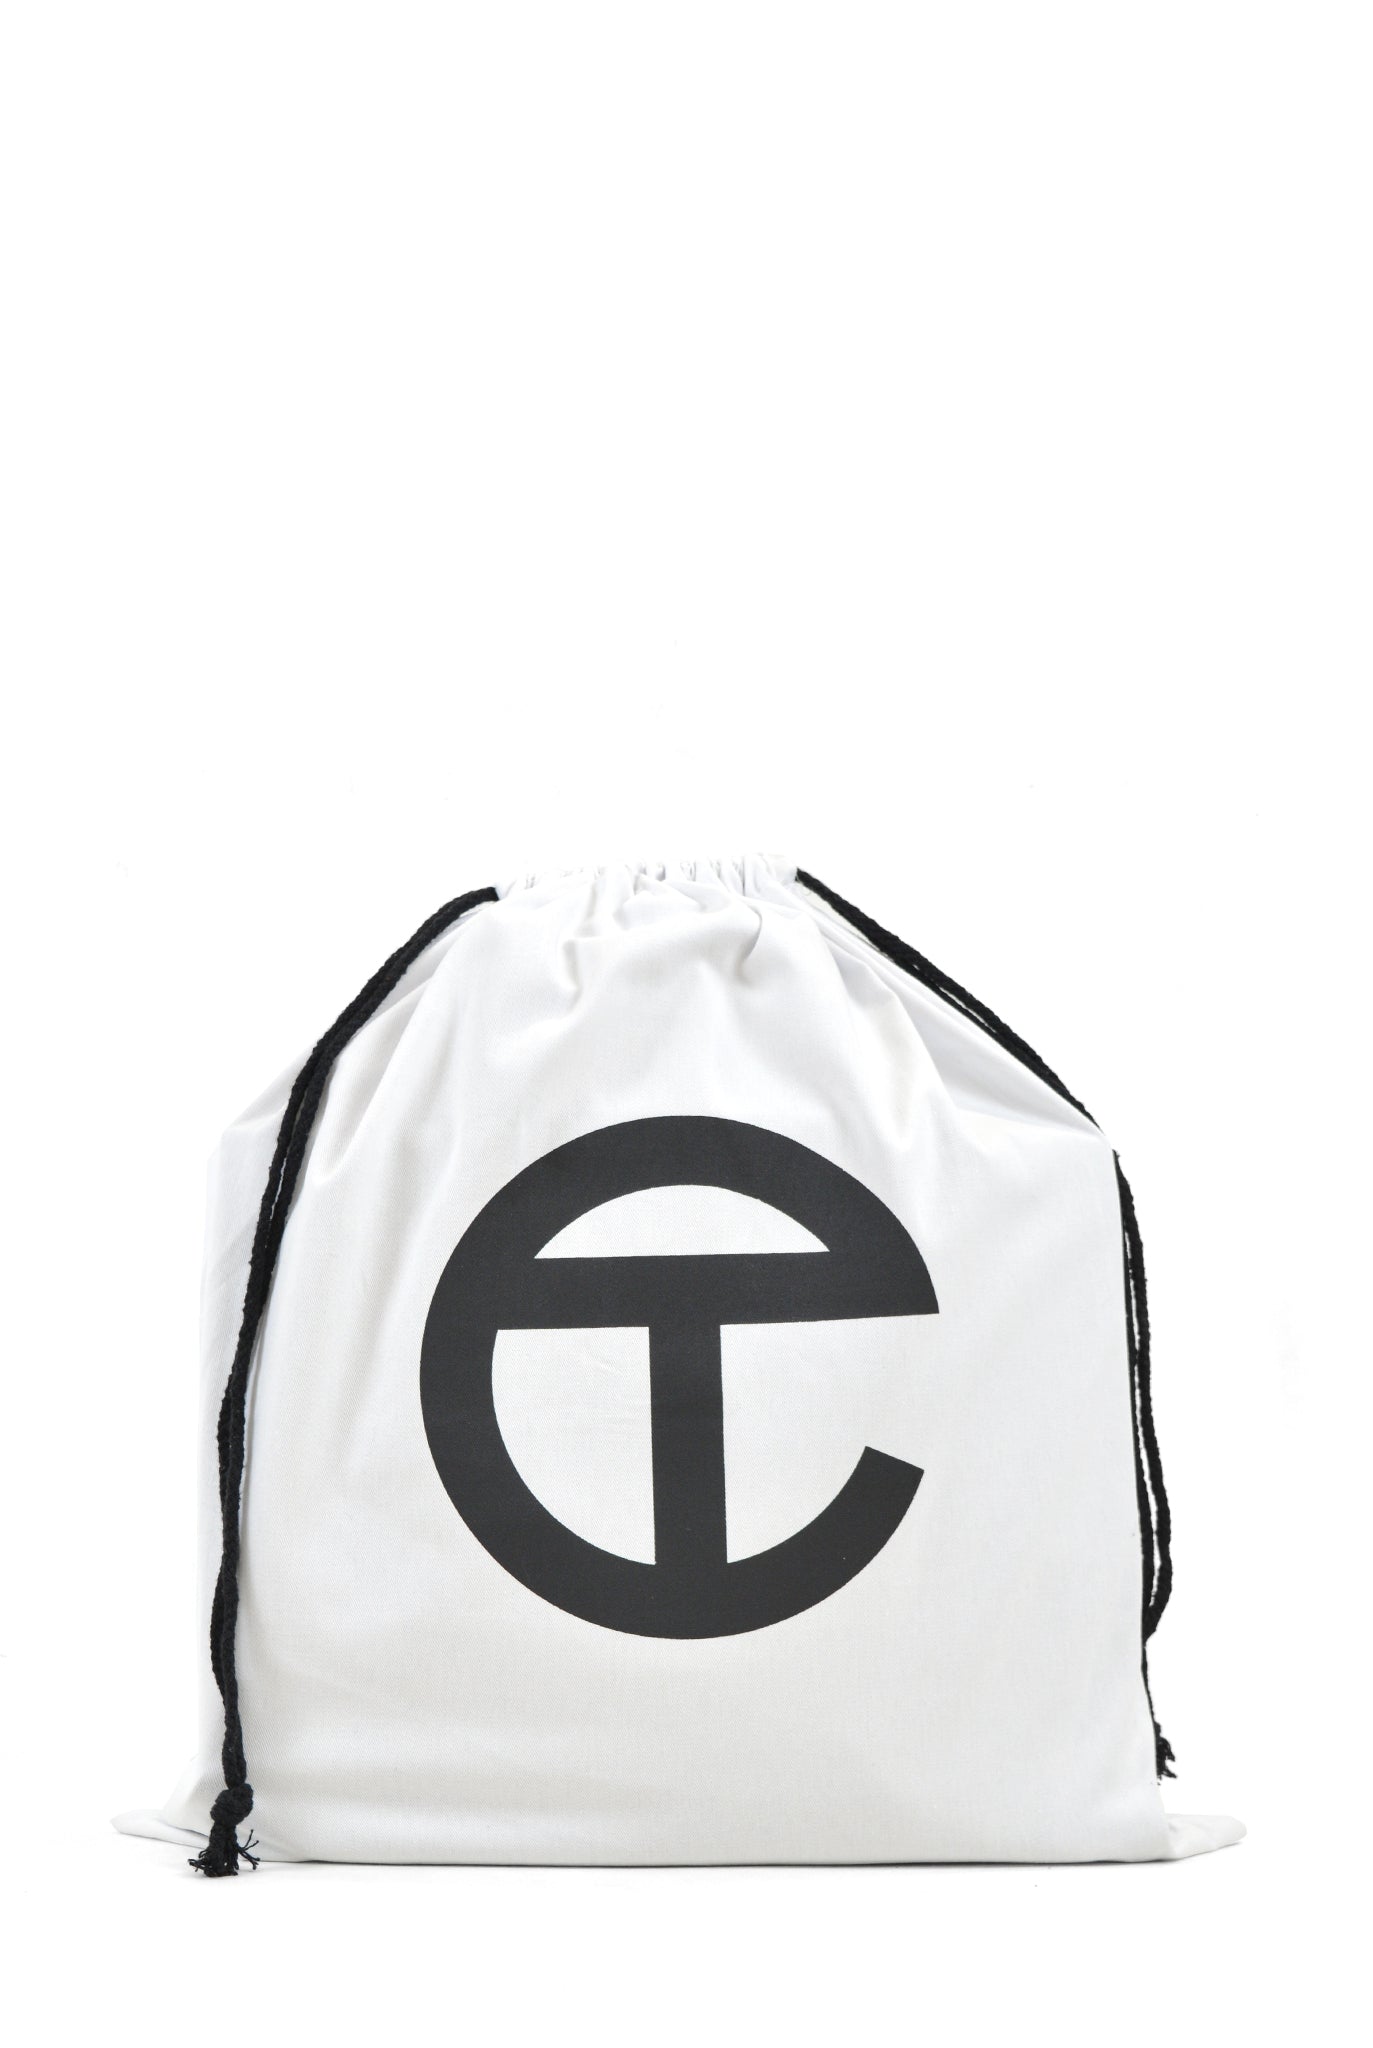 Telfar Medium Shopping Bag, Tote